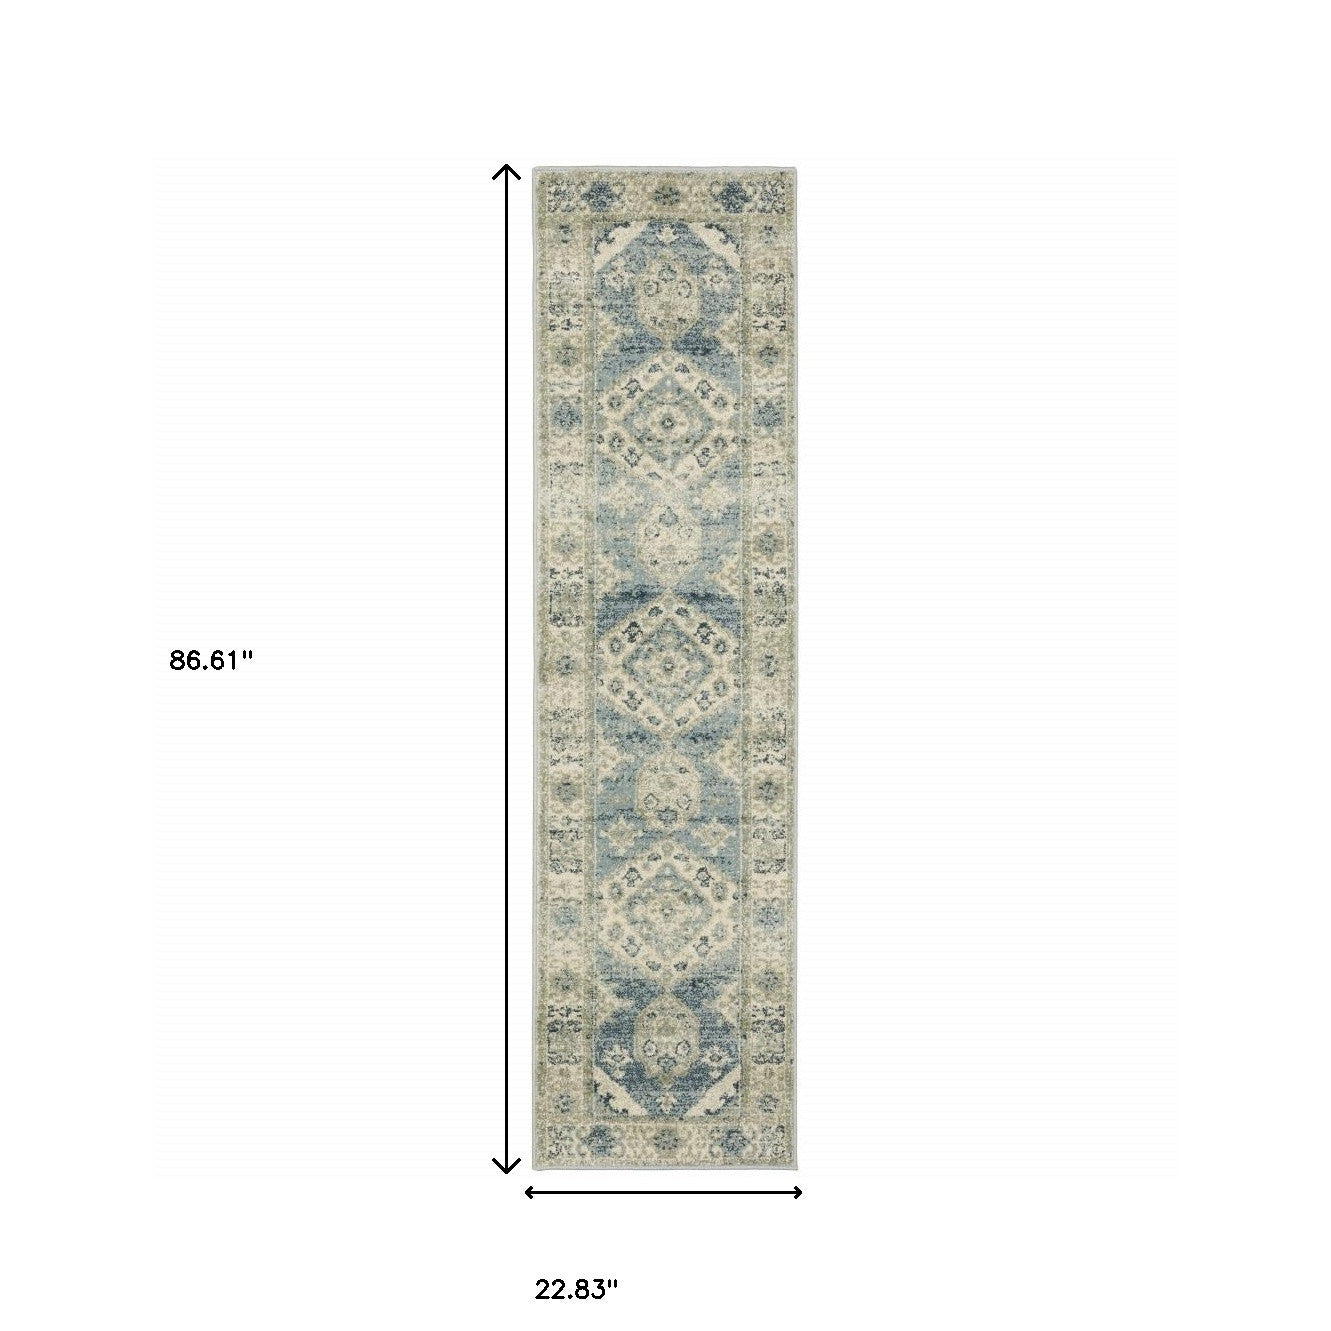 2' X 8' Blue Grey Beige And Teal Oriental Power Loom Stain Resistant Runner Rug